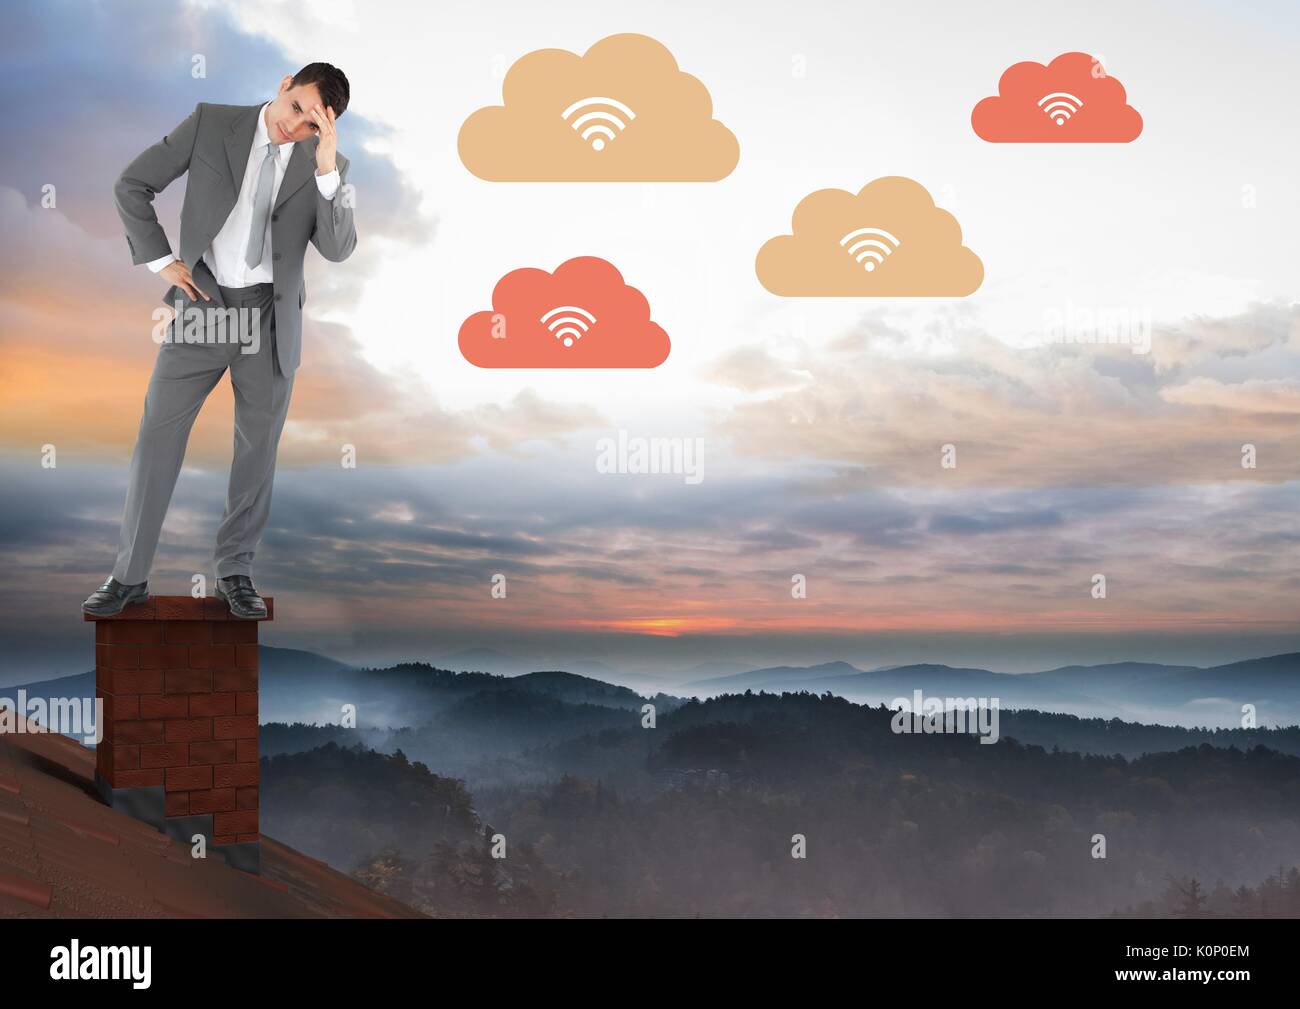 Digital composite of cloud Télécharger Icones et businessman standing on Roof avec cheminée et misty paysage ciel coloré Banque D'Images